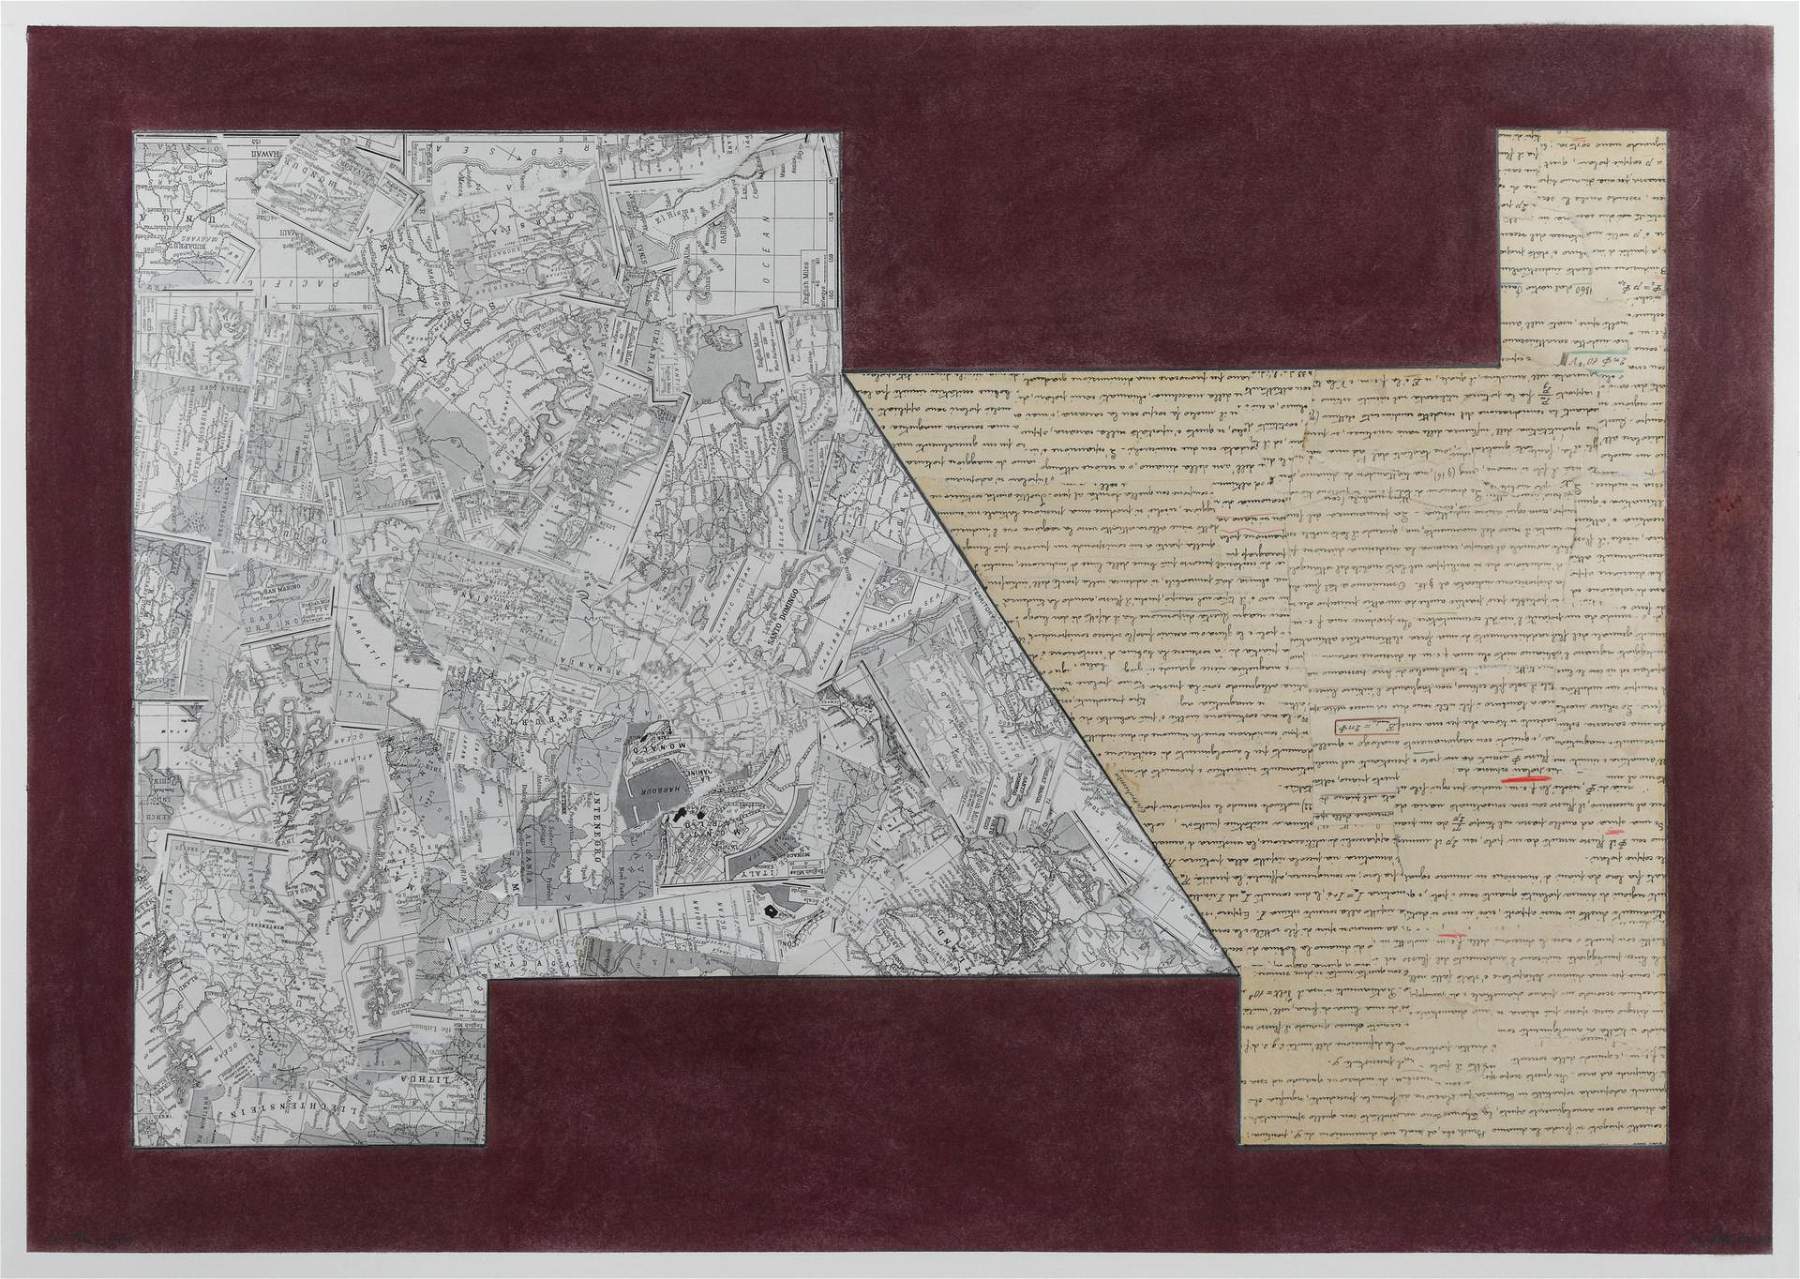 Bologne, les nouvelles œuvres sur papier de David Tremlett à la Galleria G7